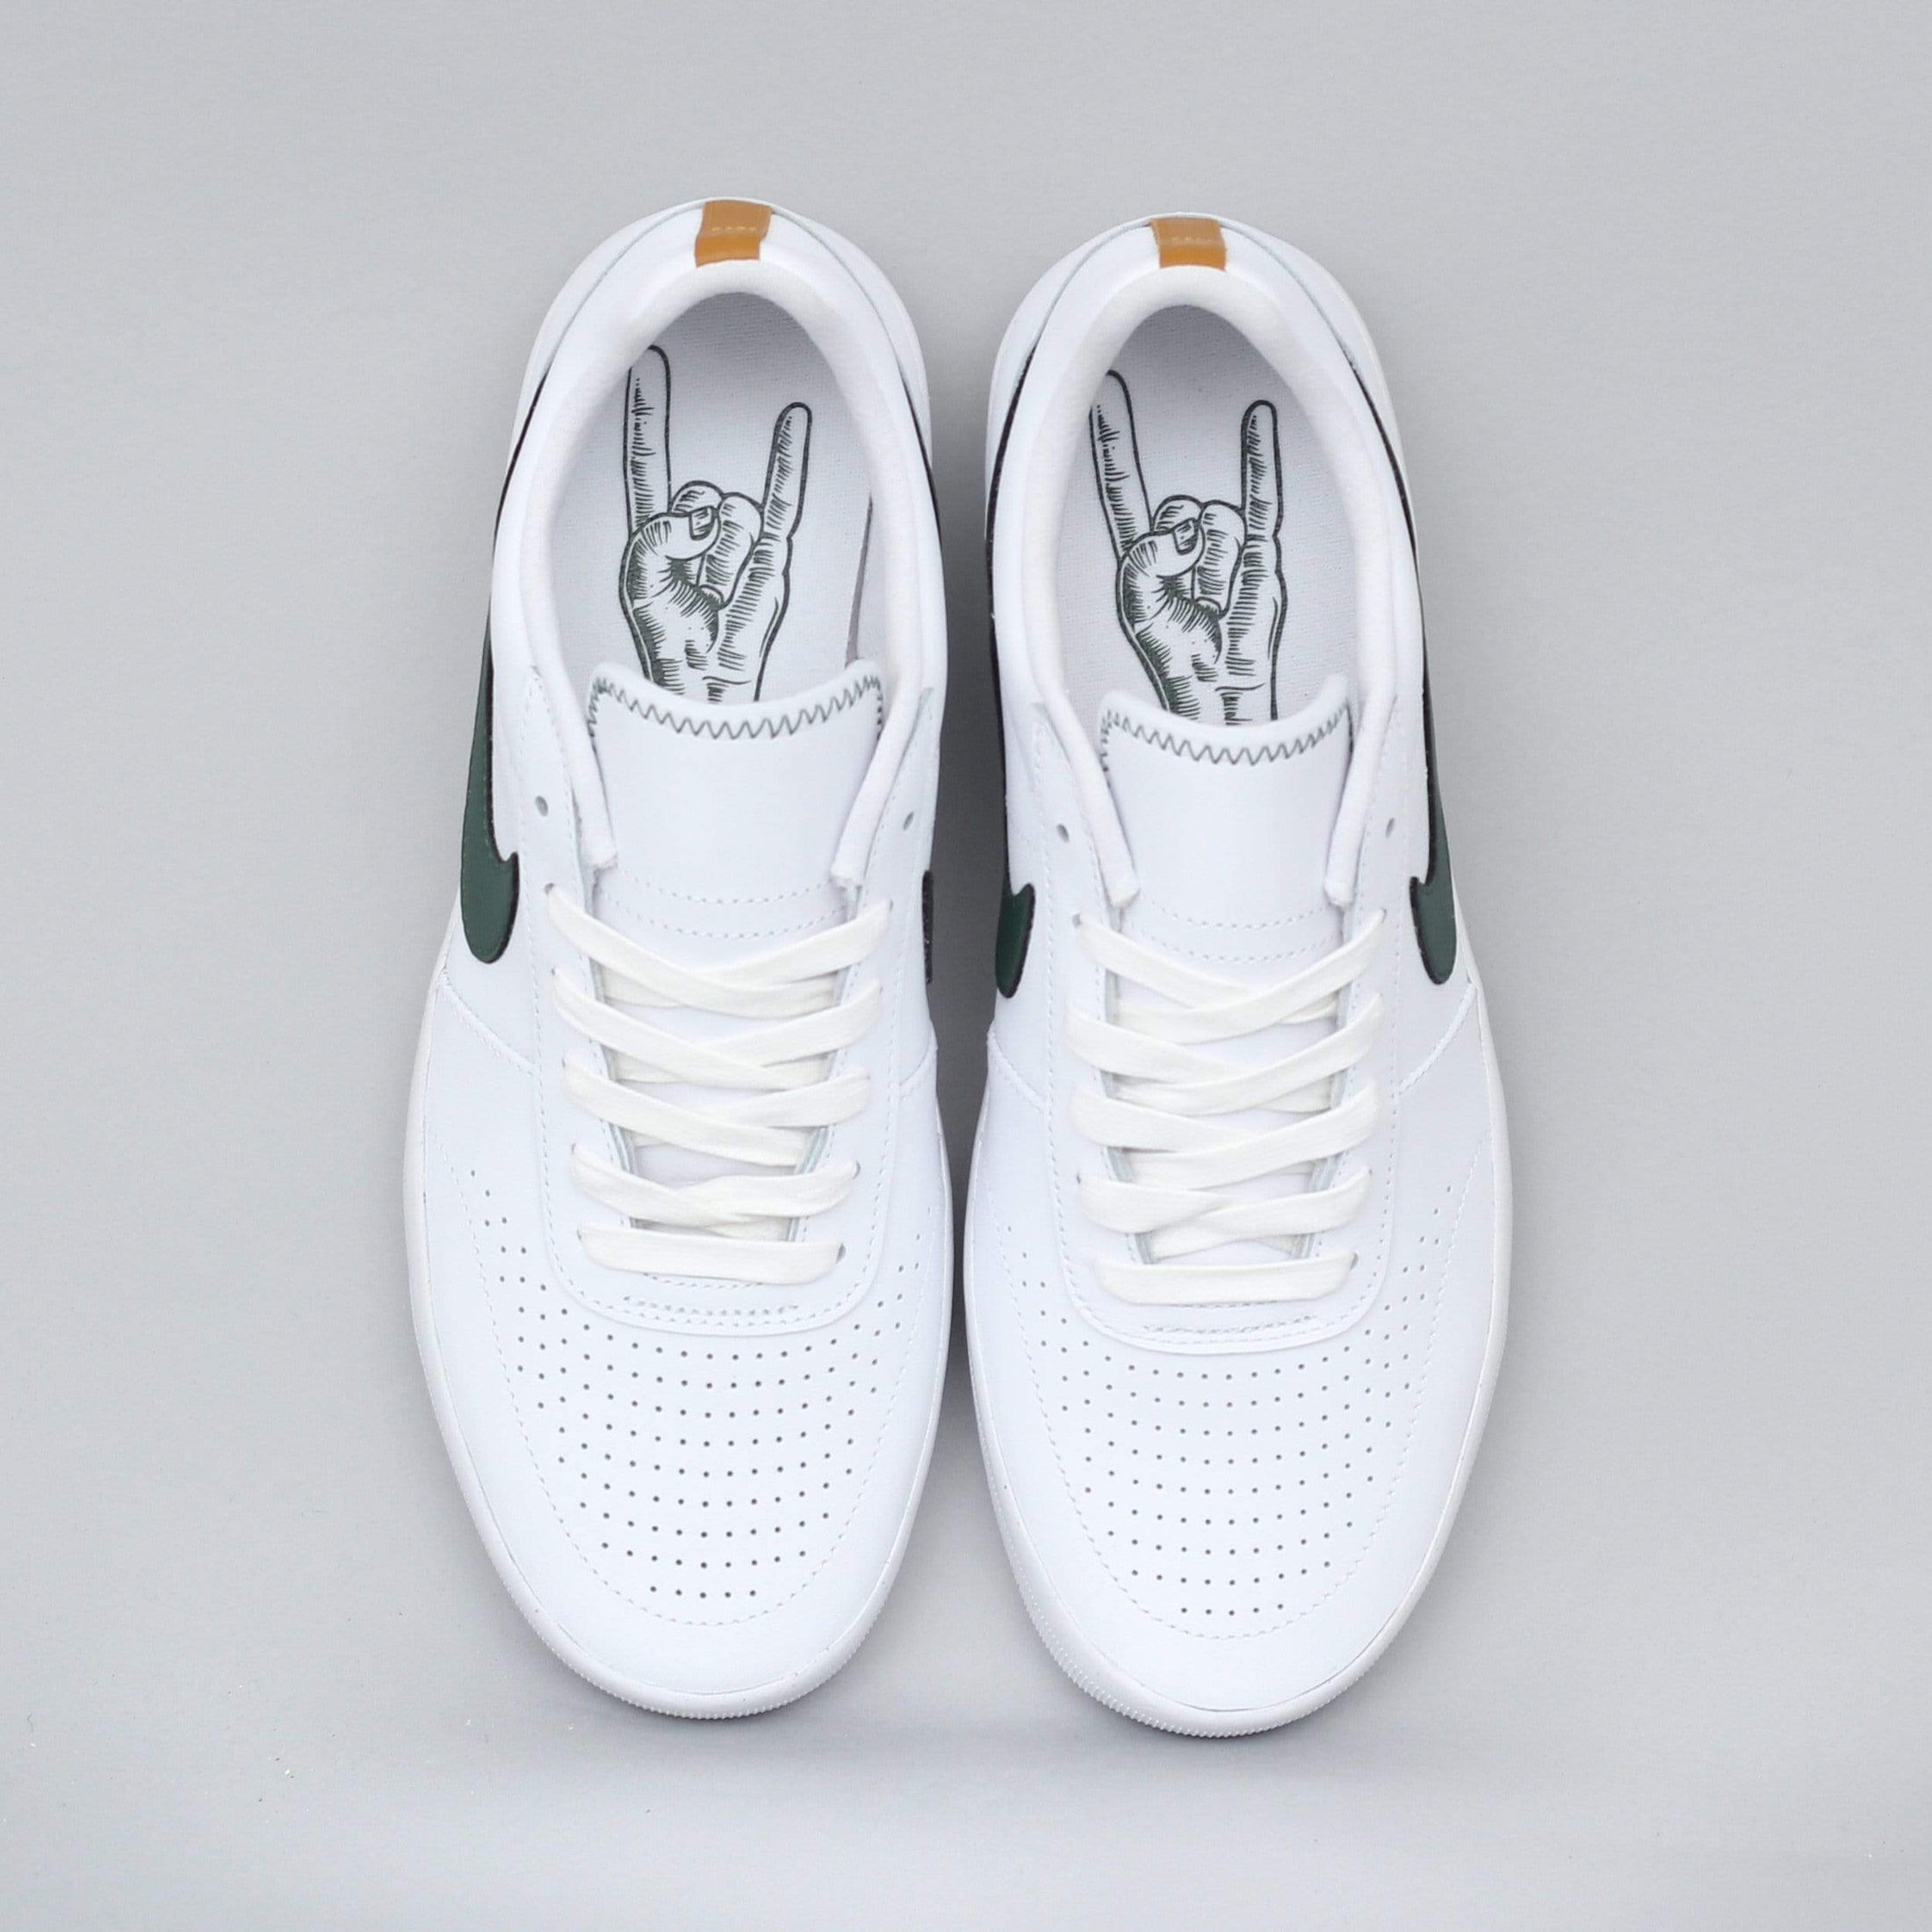 Nike SB Mariano Team Classic Premium Shoes White / Galactic Jade - Desert Ochre - White